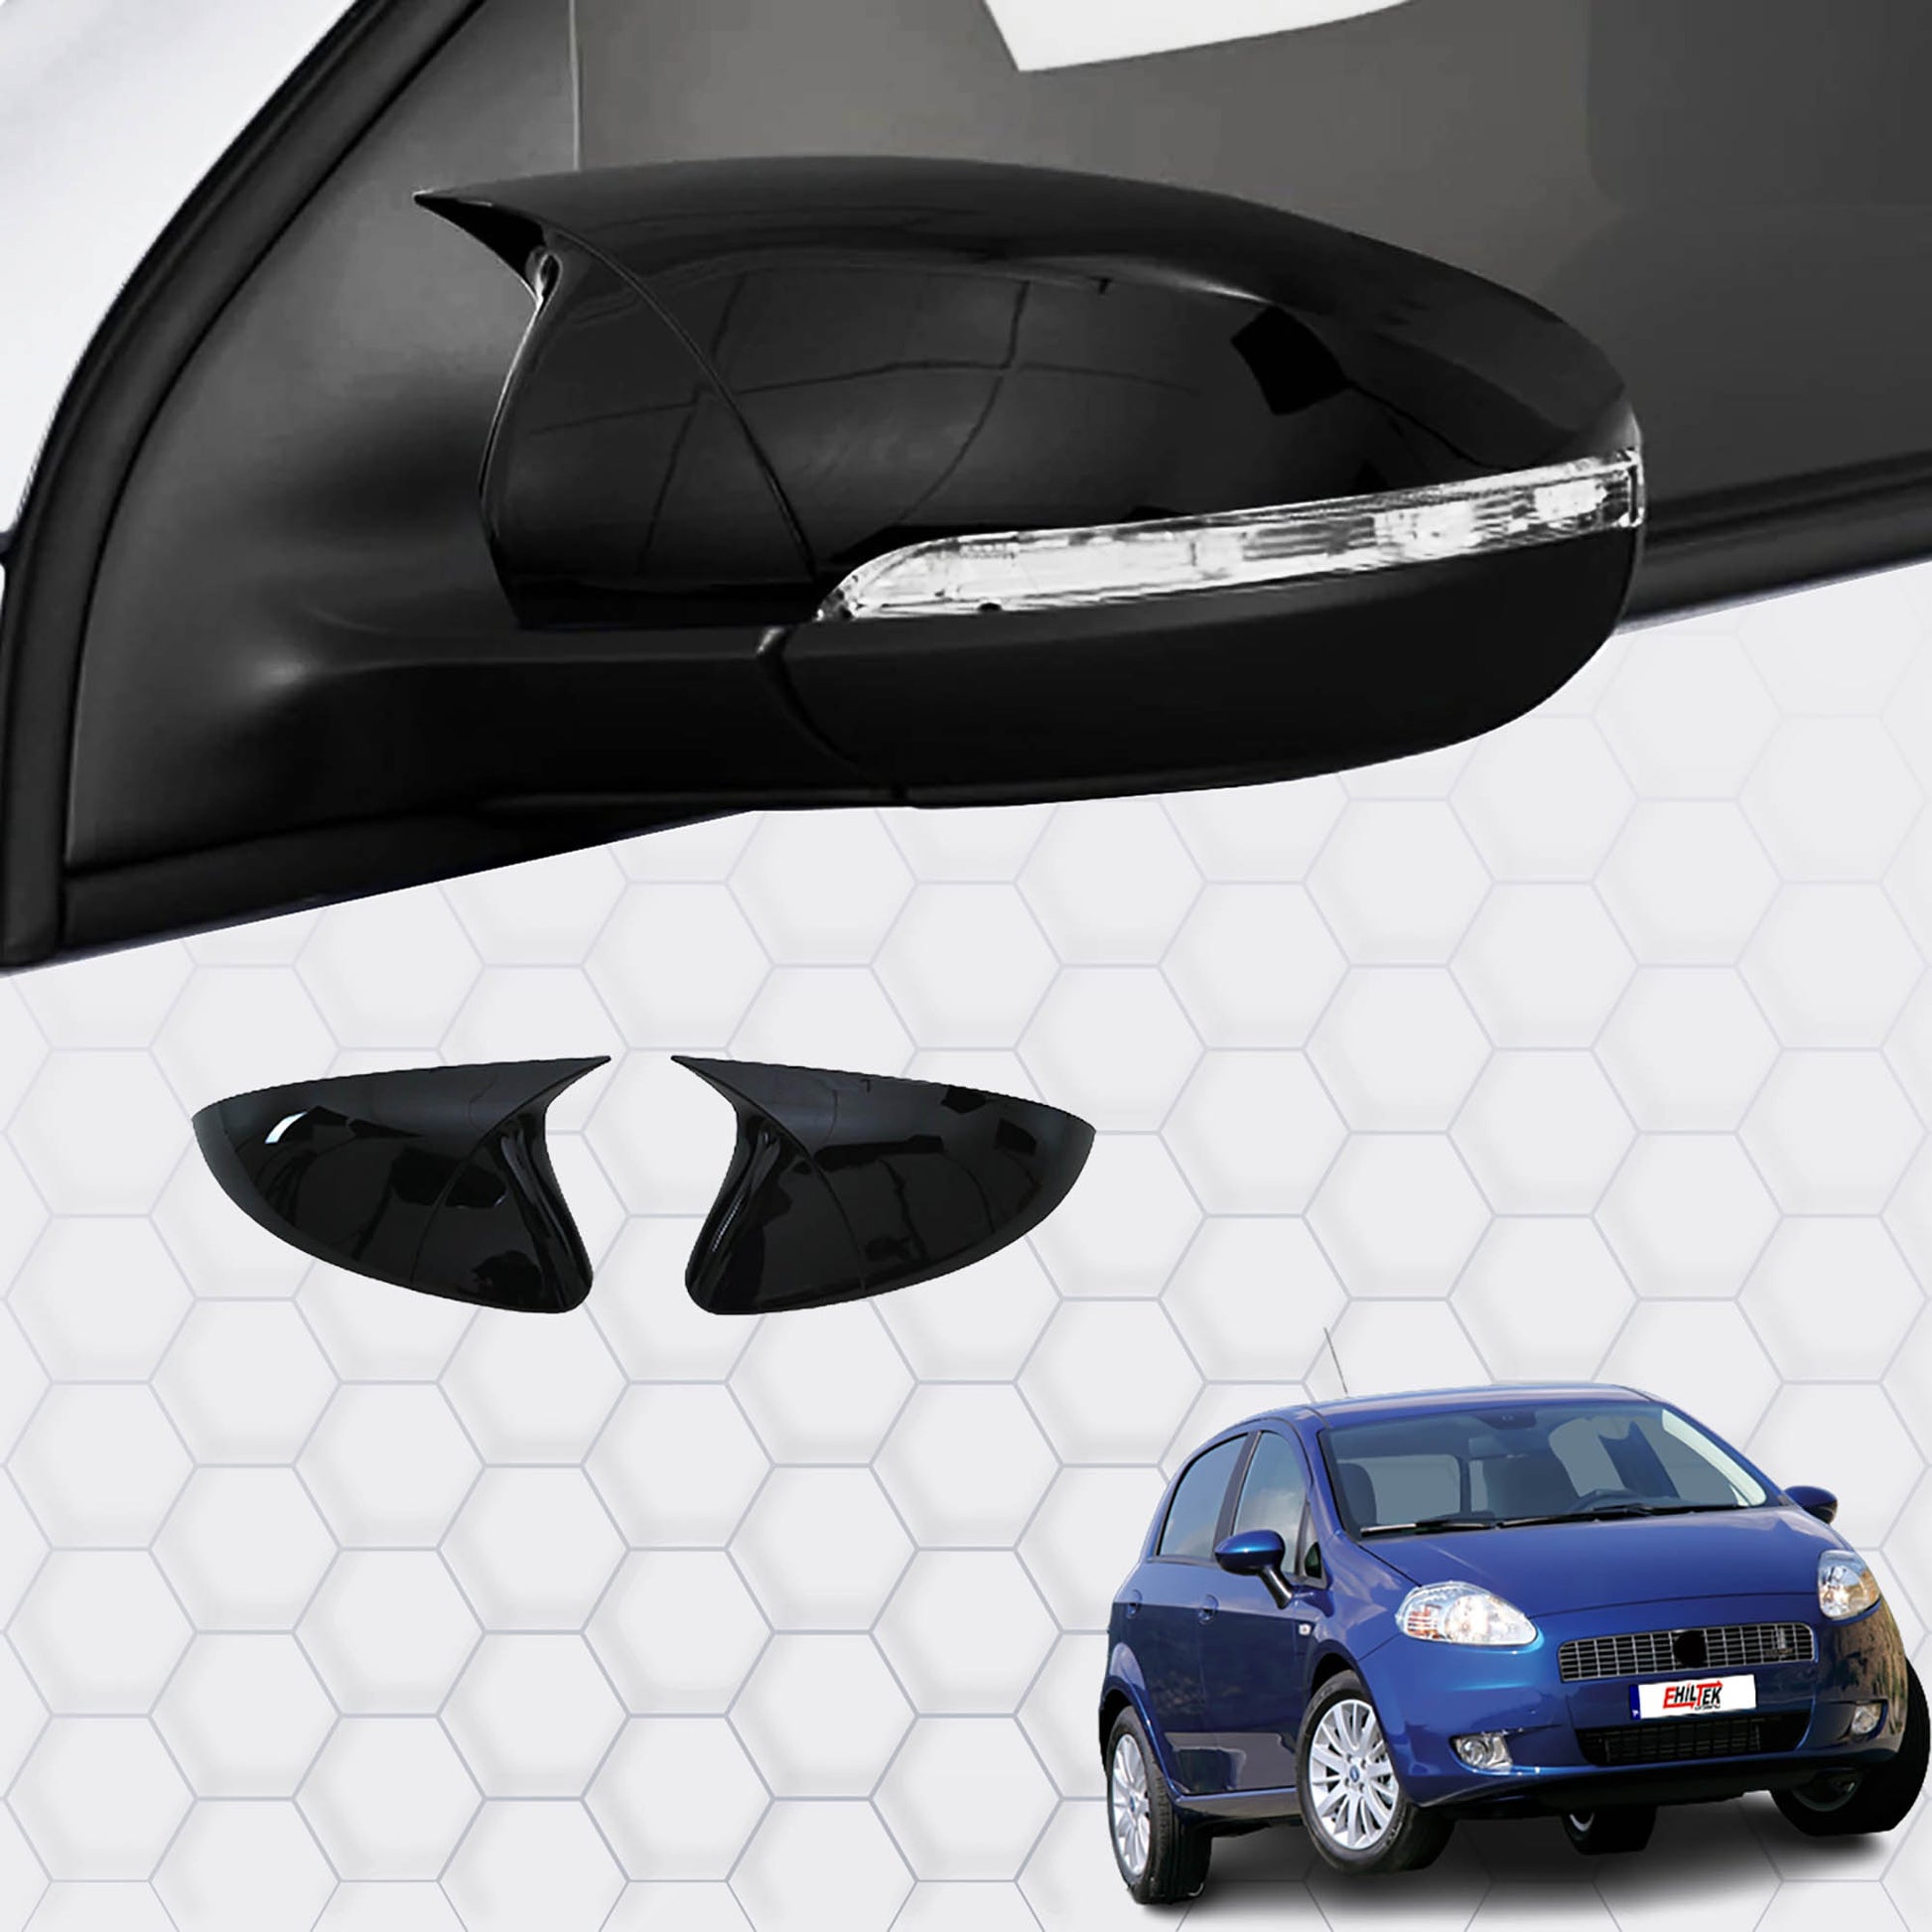 Fiat Grande Punto Yarasa Ayna Kapağı Aksesuarları Detaylı Resimleri, Kampanya bilgileri ve fiyatı - 1